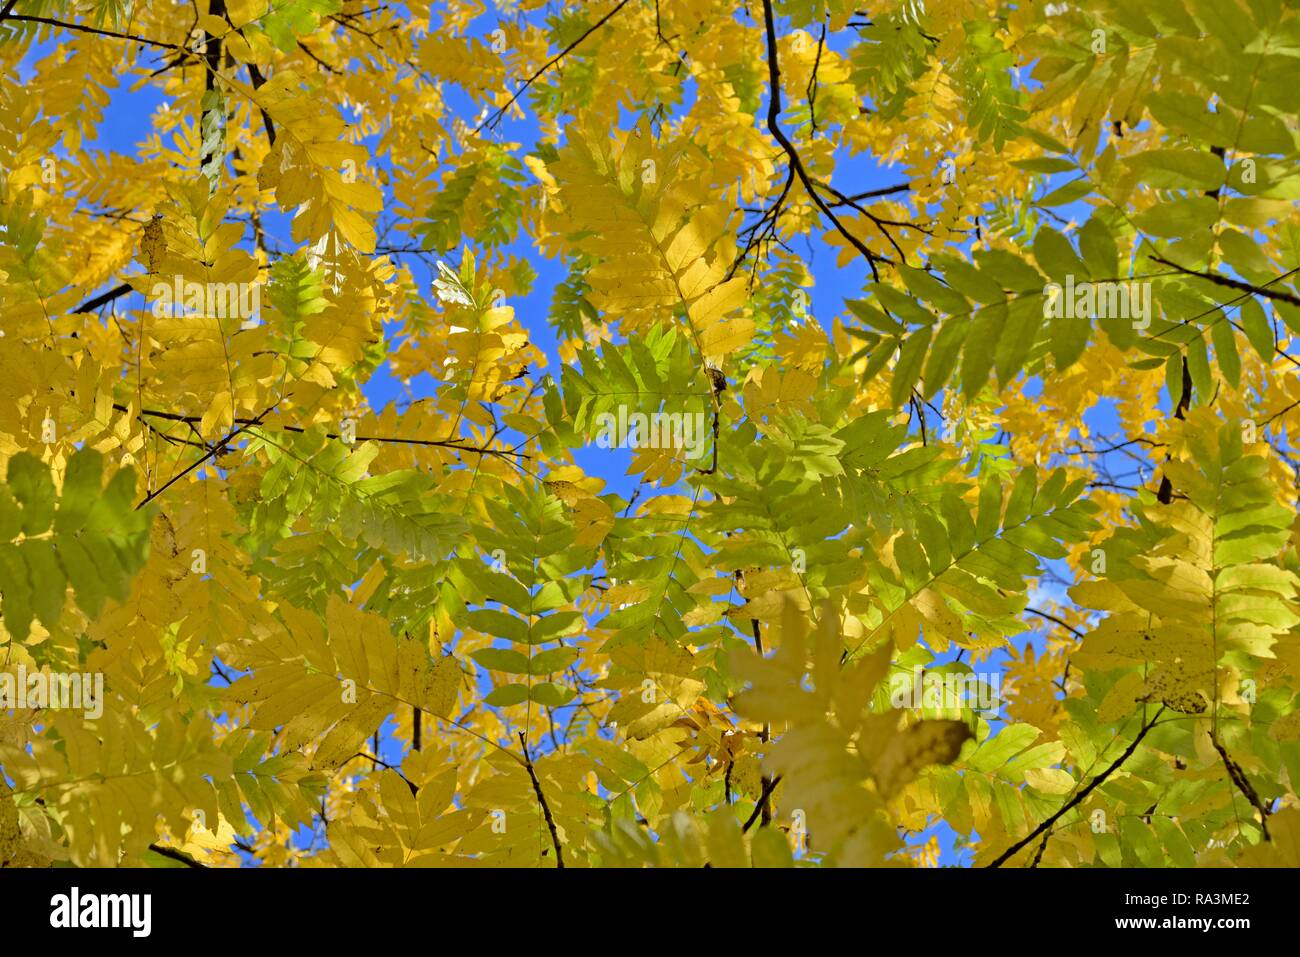 Wingnut caucasienne (Elaeagnus commutata), les branches avec les feuilles d'automne, ciel bleu, Rhénanie du Nord-Westphalie, Allemagne Banque D'Images